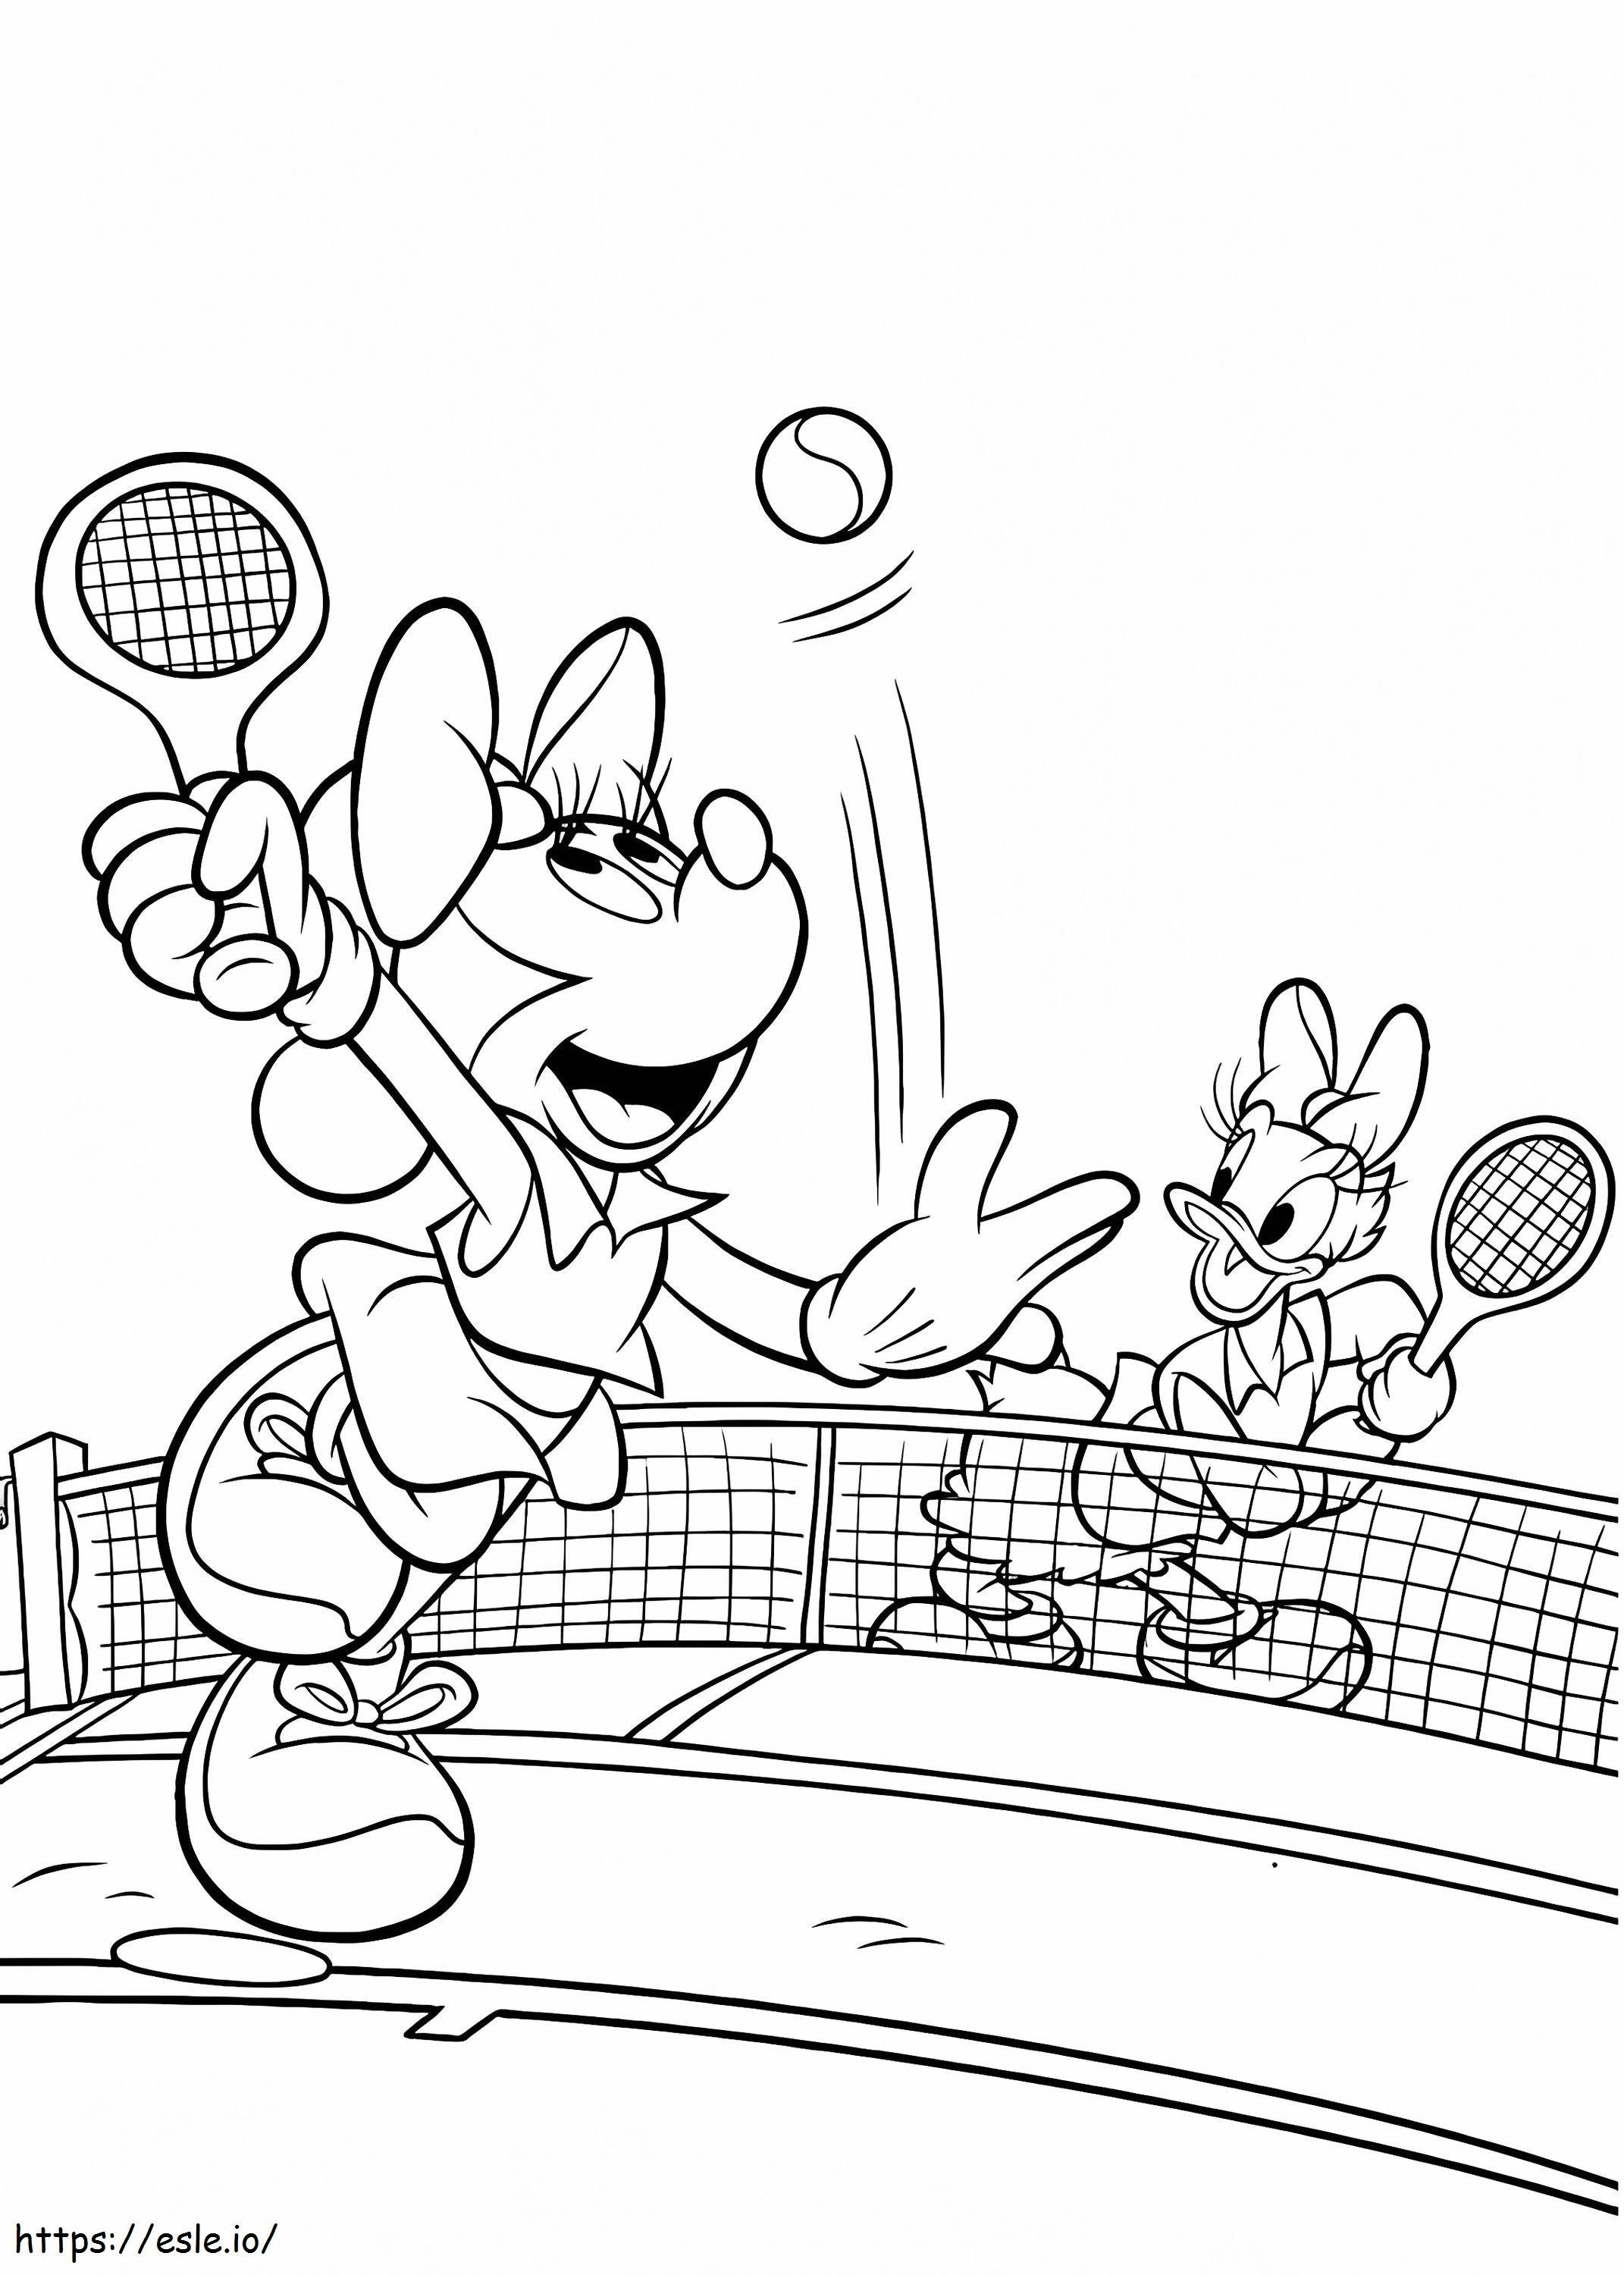  Minnie und Daisy spielen Tennis A4 ausmalbilder